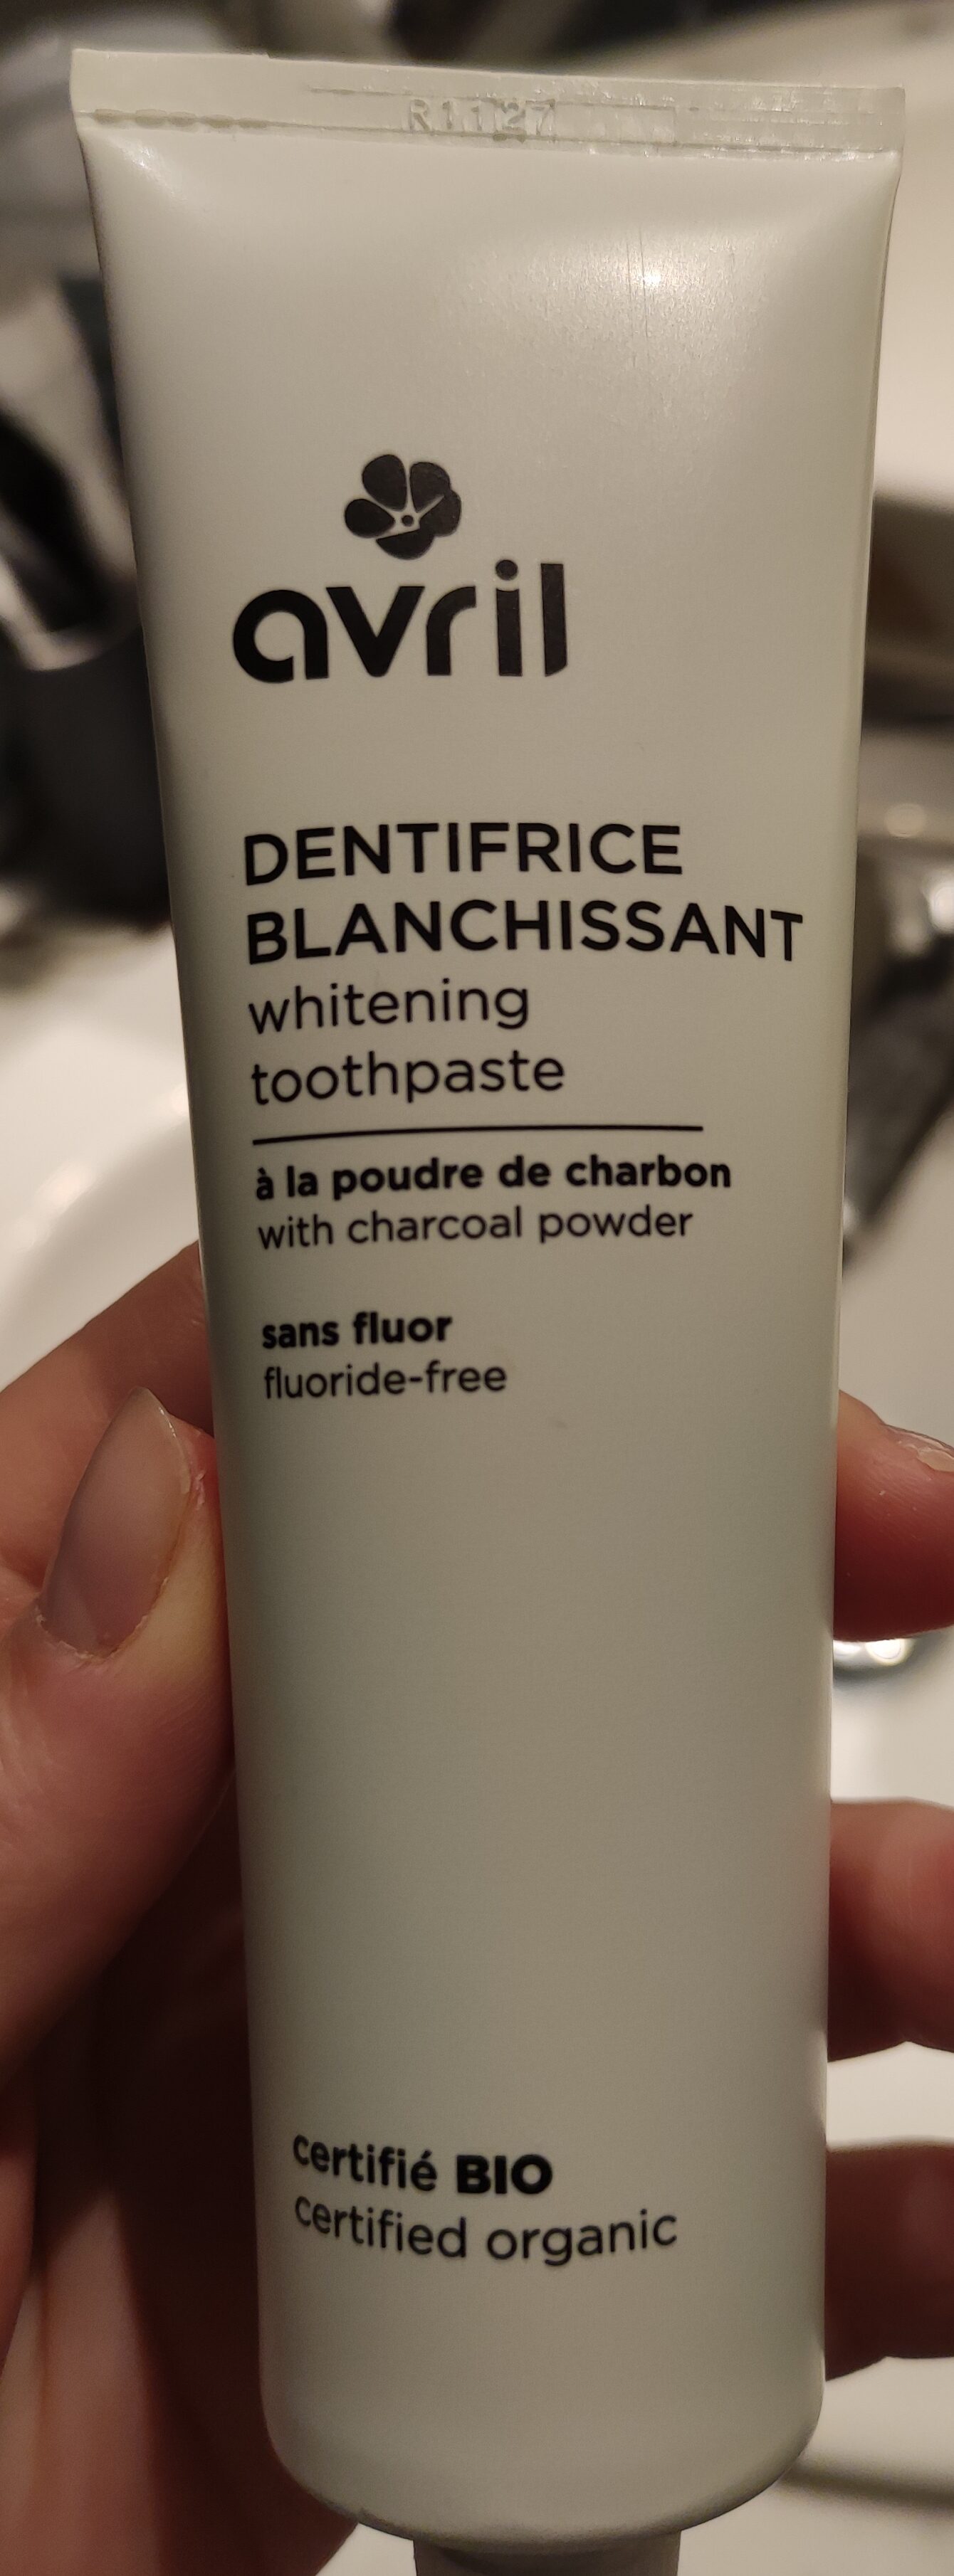 Avril dentifrice blanchissant - Produit - fr